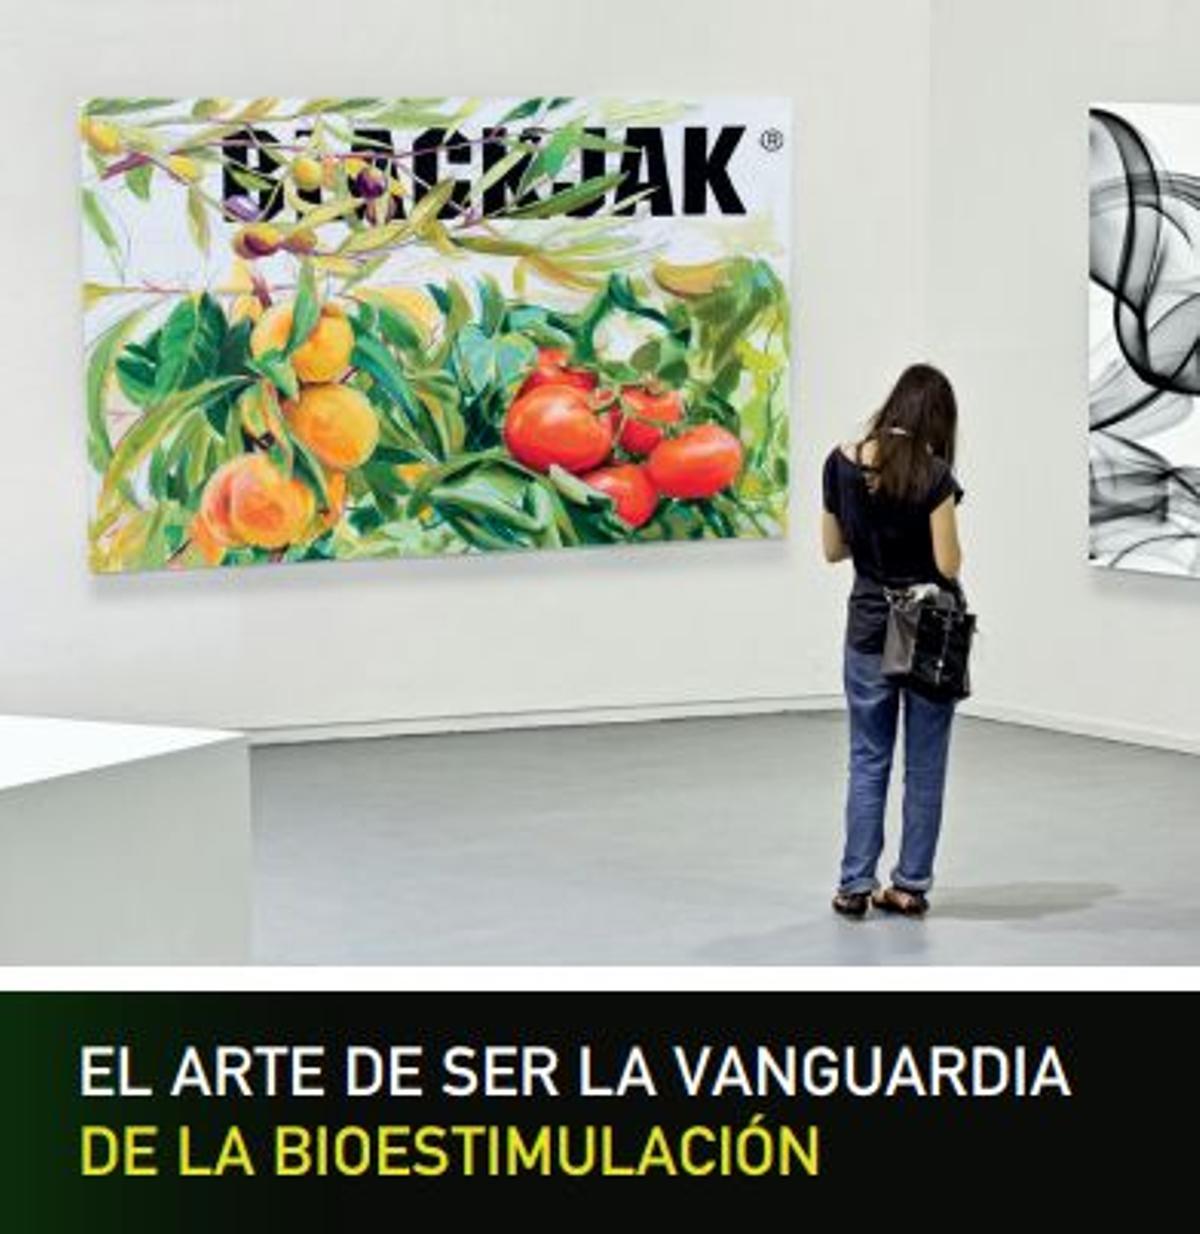 Blackjak aporta beneficios a las cosechas y a la rentabilidad del agricultor.